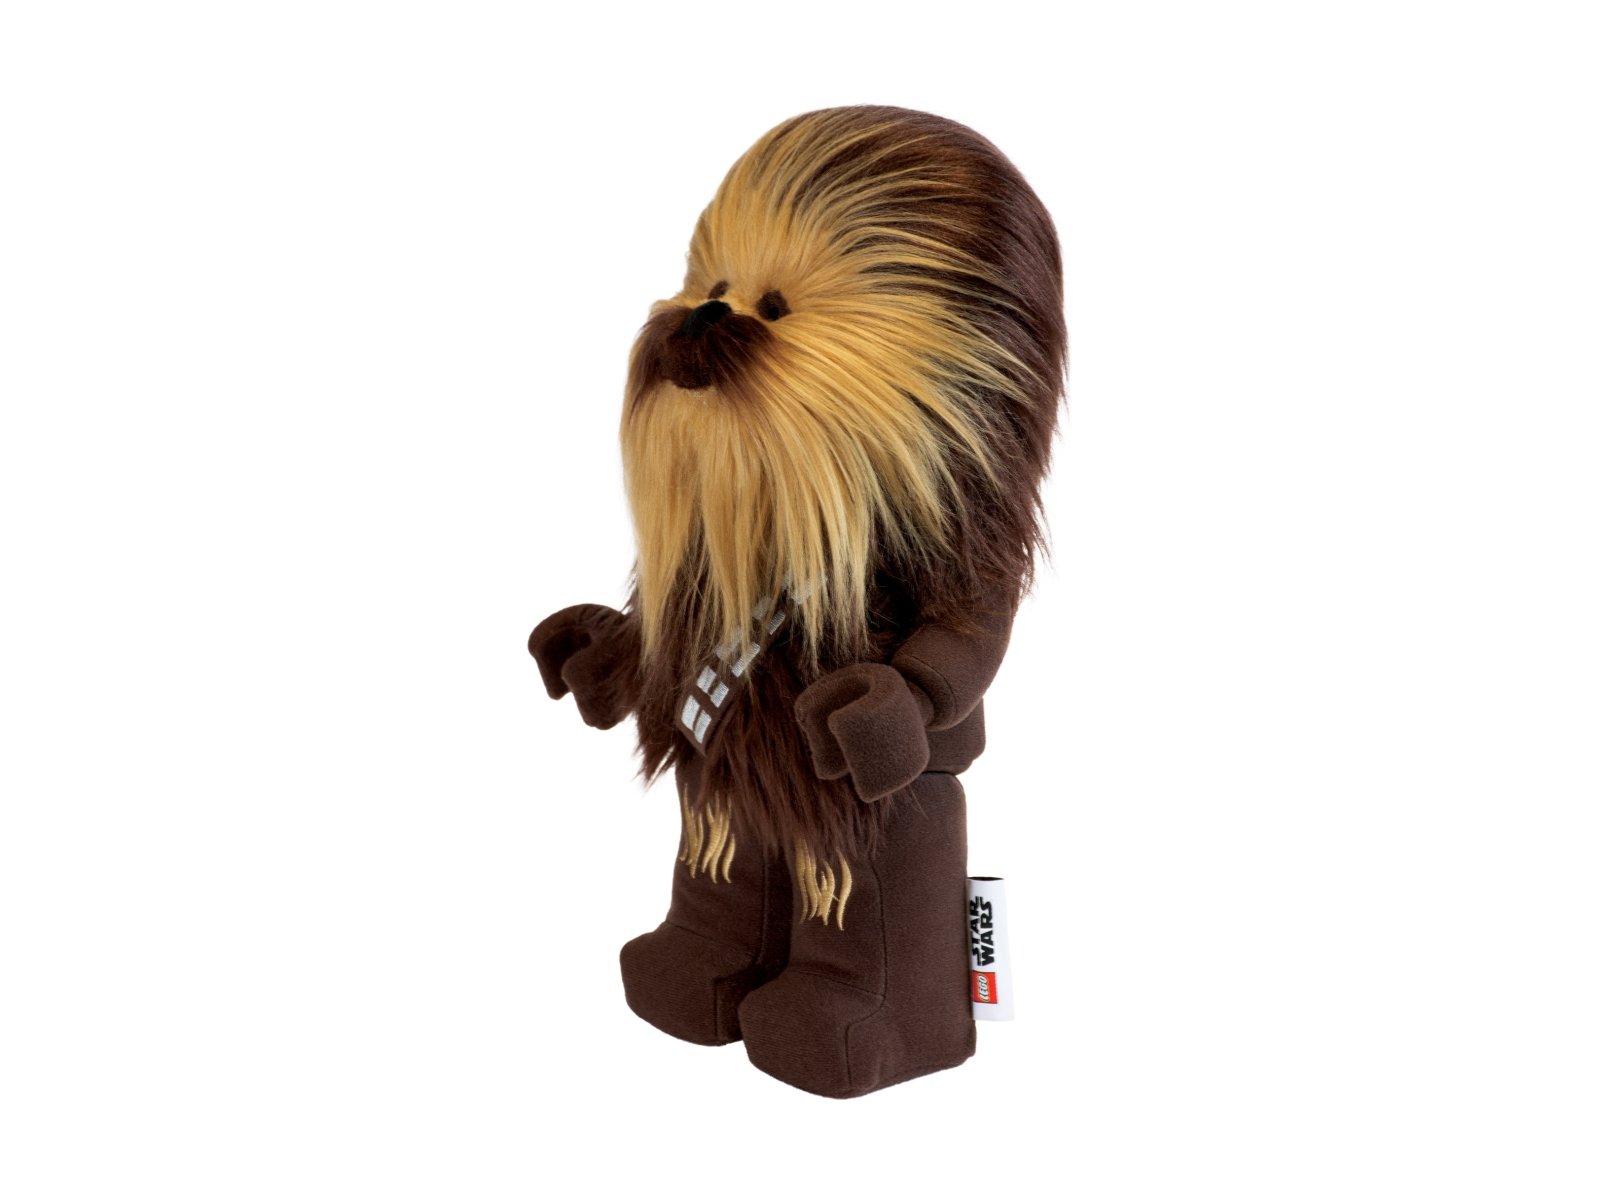 LEGO Star Wars 5006624 Pluszowy Chewbacca™